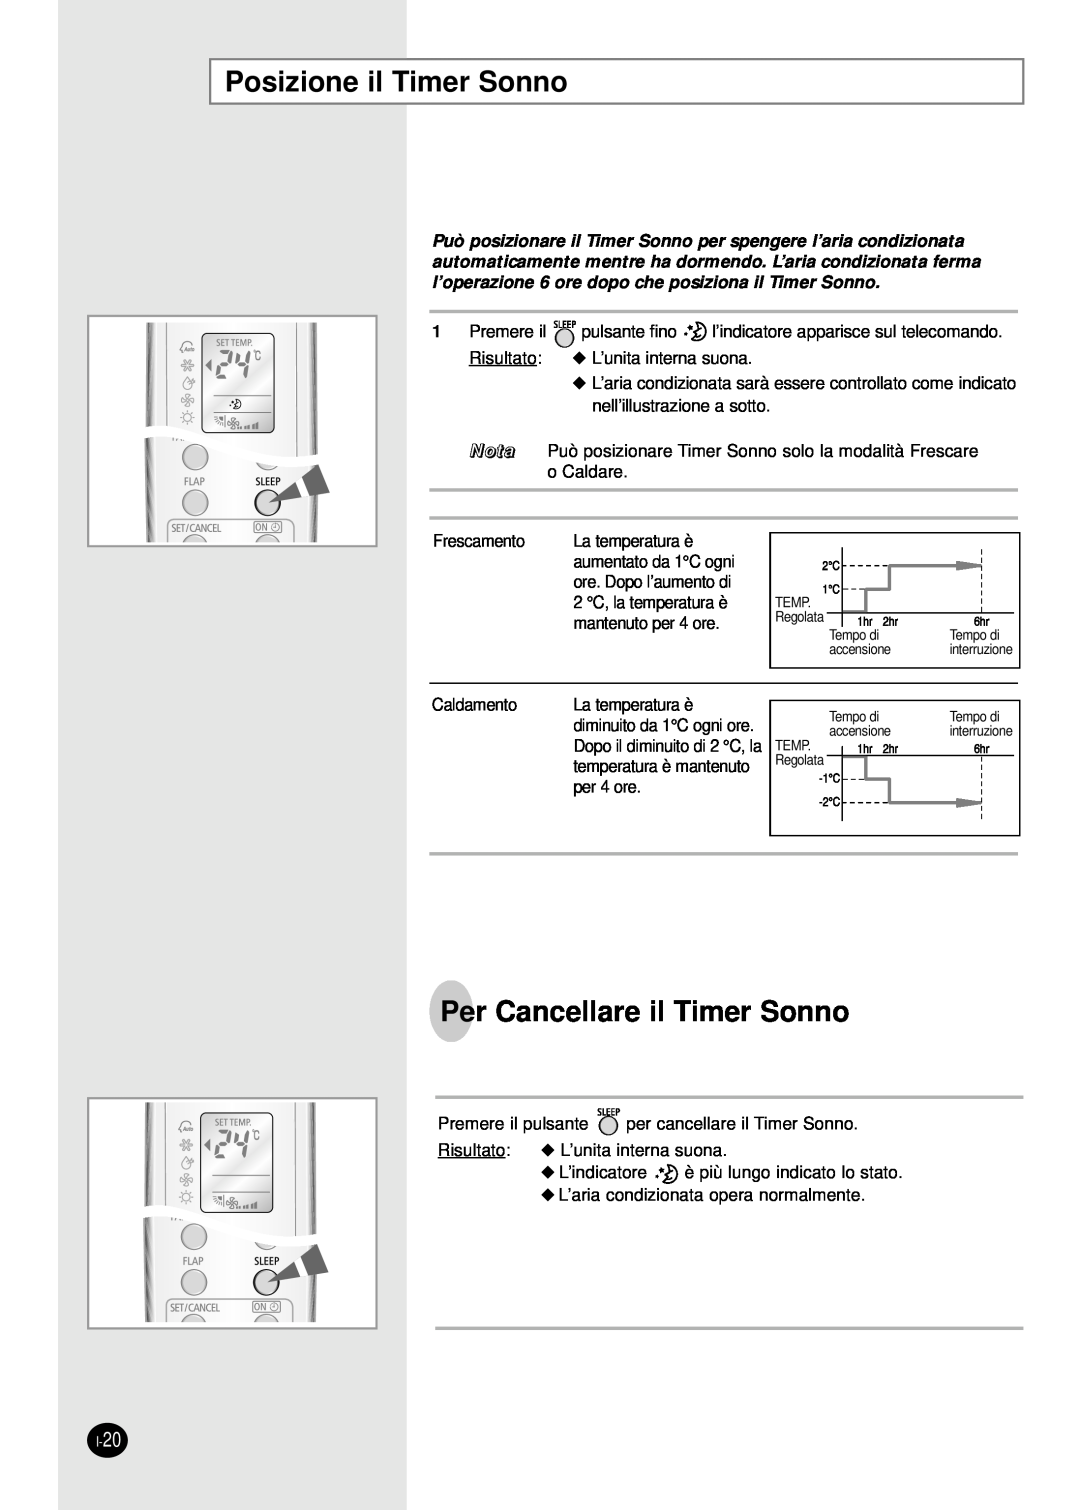 Samsung SH18AW6X, SH24AW6X manual Posizione il Timer Sonno, Per Cancellare il Timer Sonno 